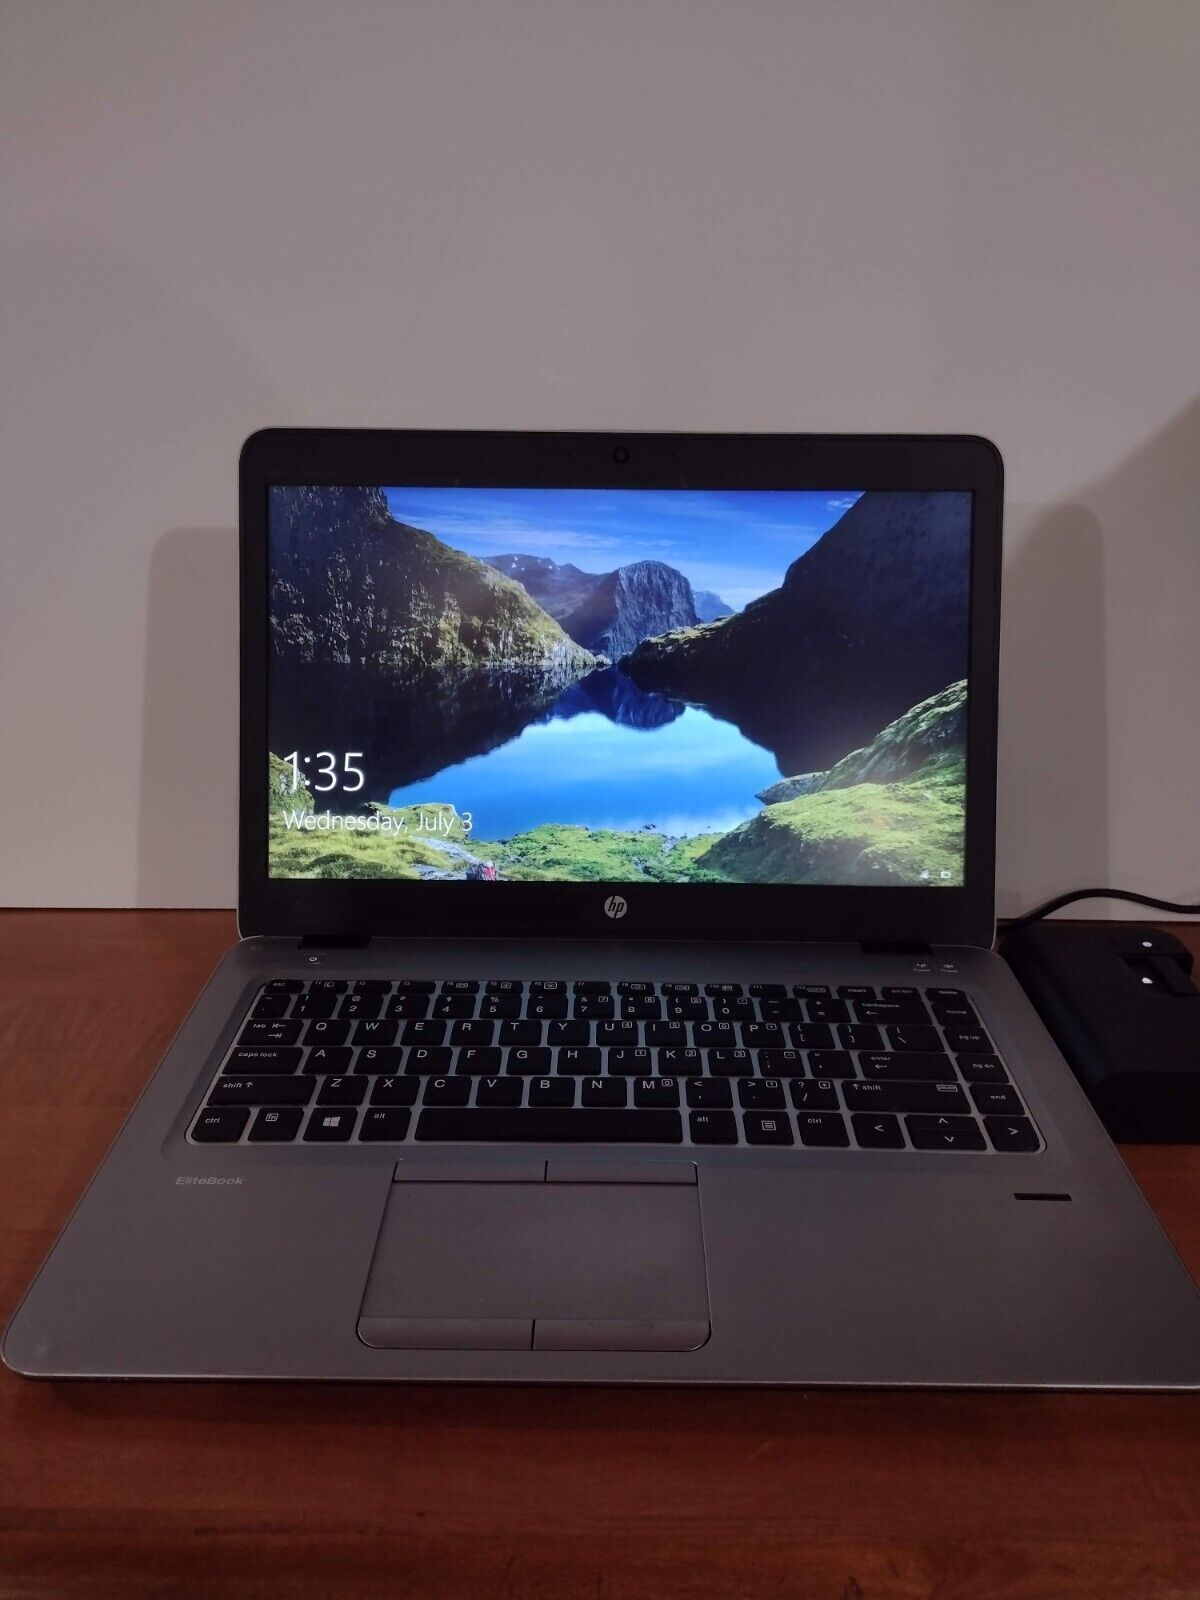 HP Elitebook 745 g3 Laptop PC; AMD A10 APU; 16 GB RAM; 256 GB SSD; W10; + Dock